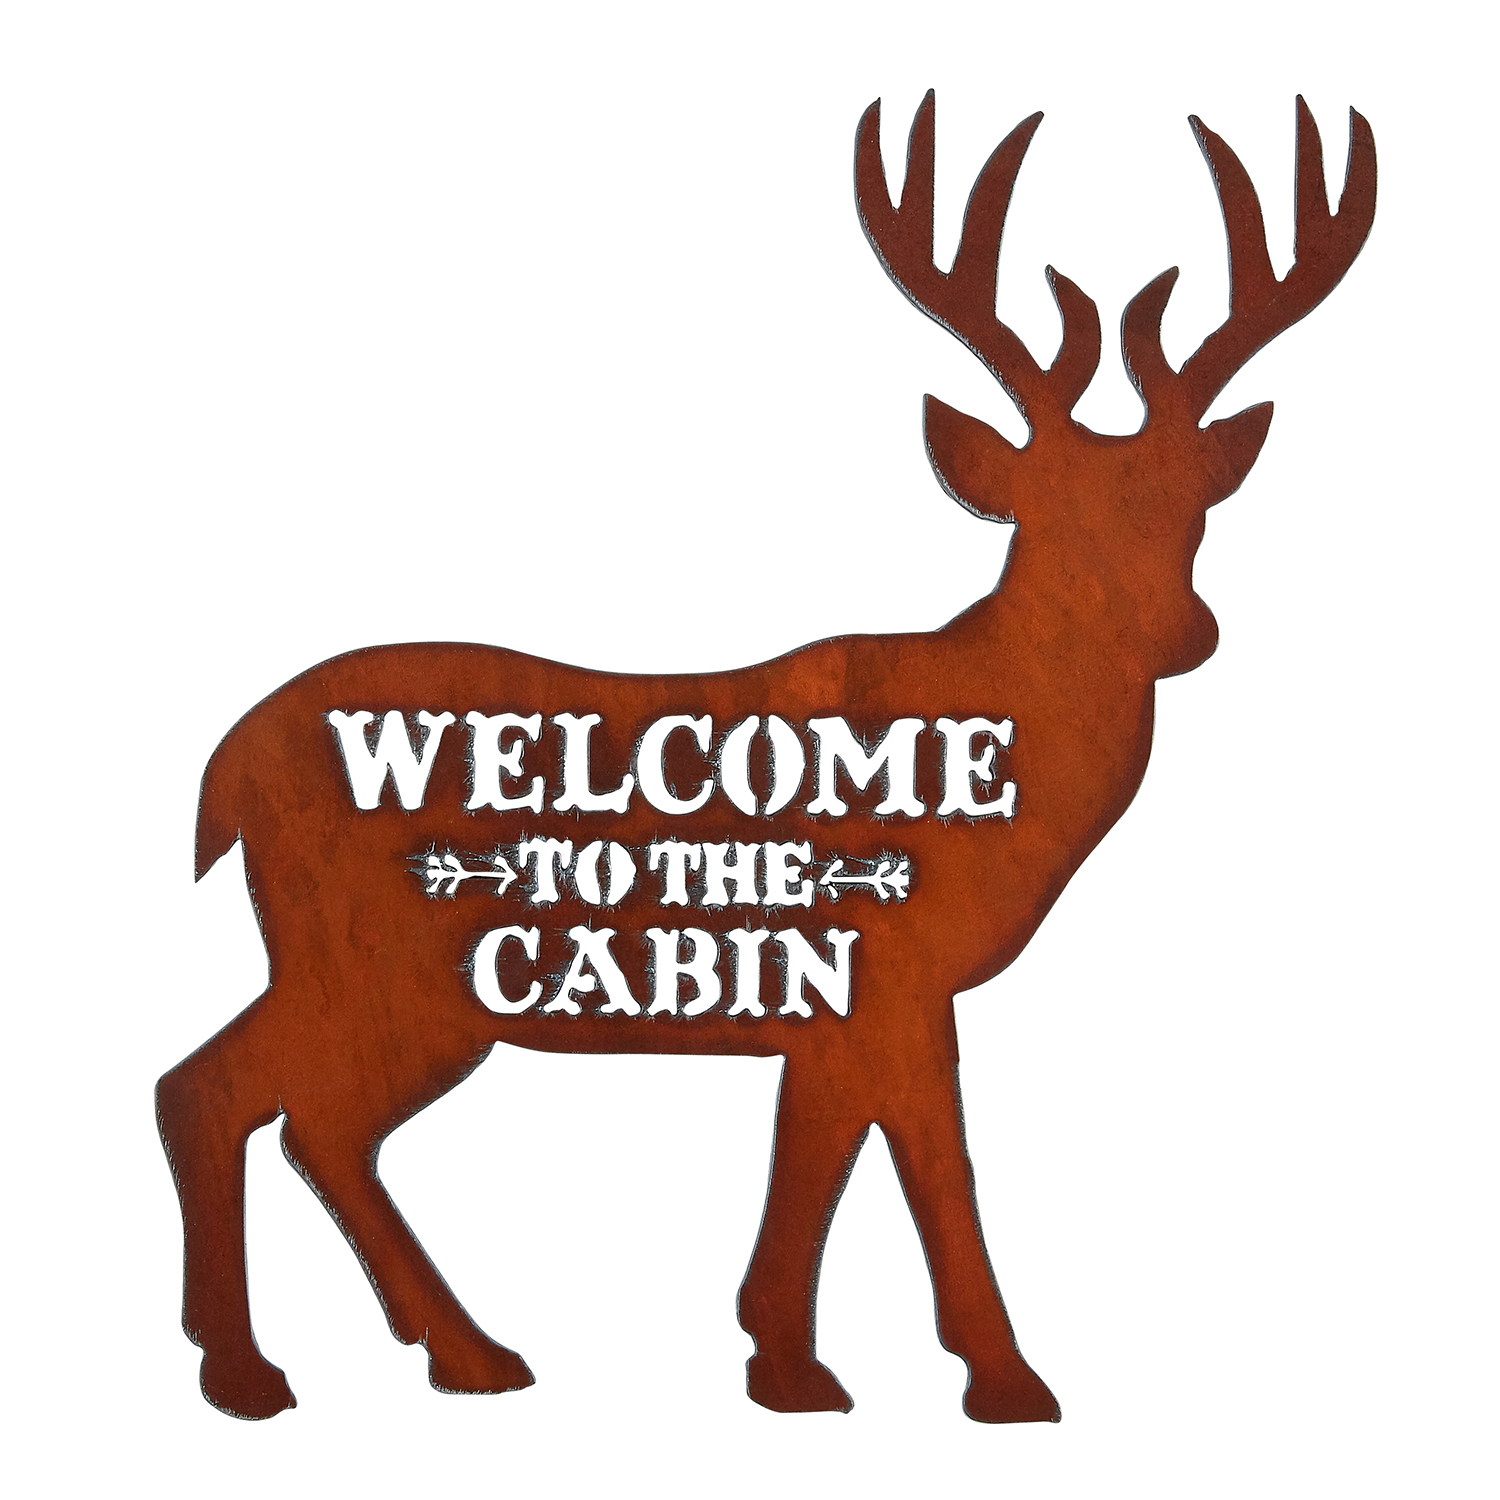 Deer/Cabin Image Welcome Sign